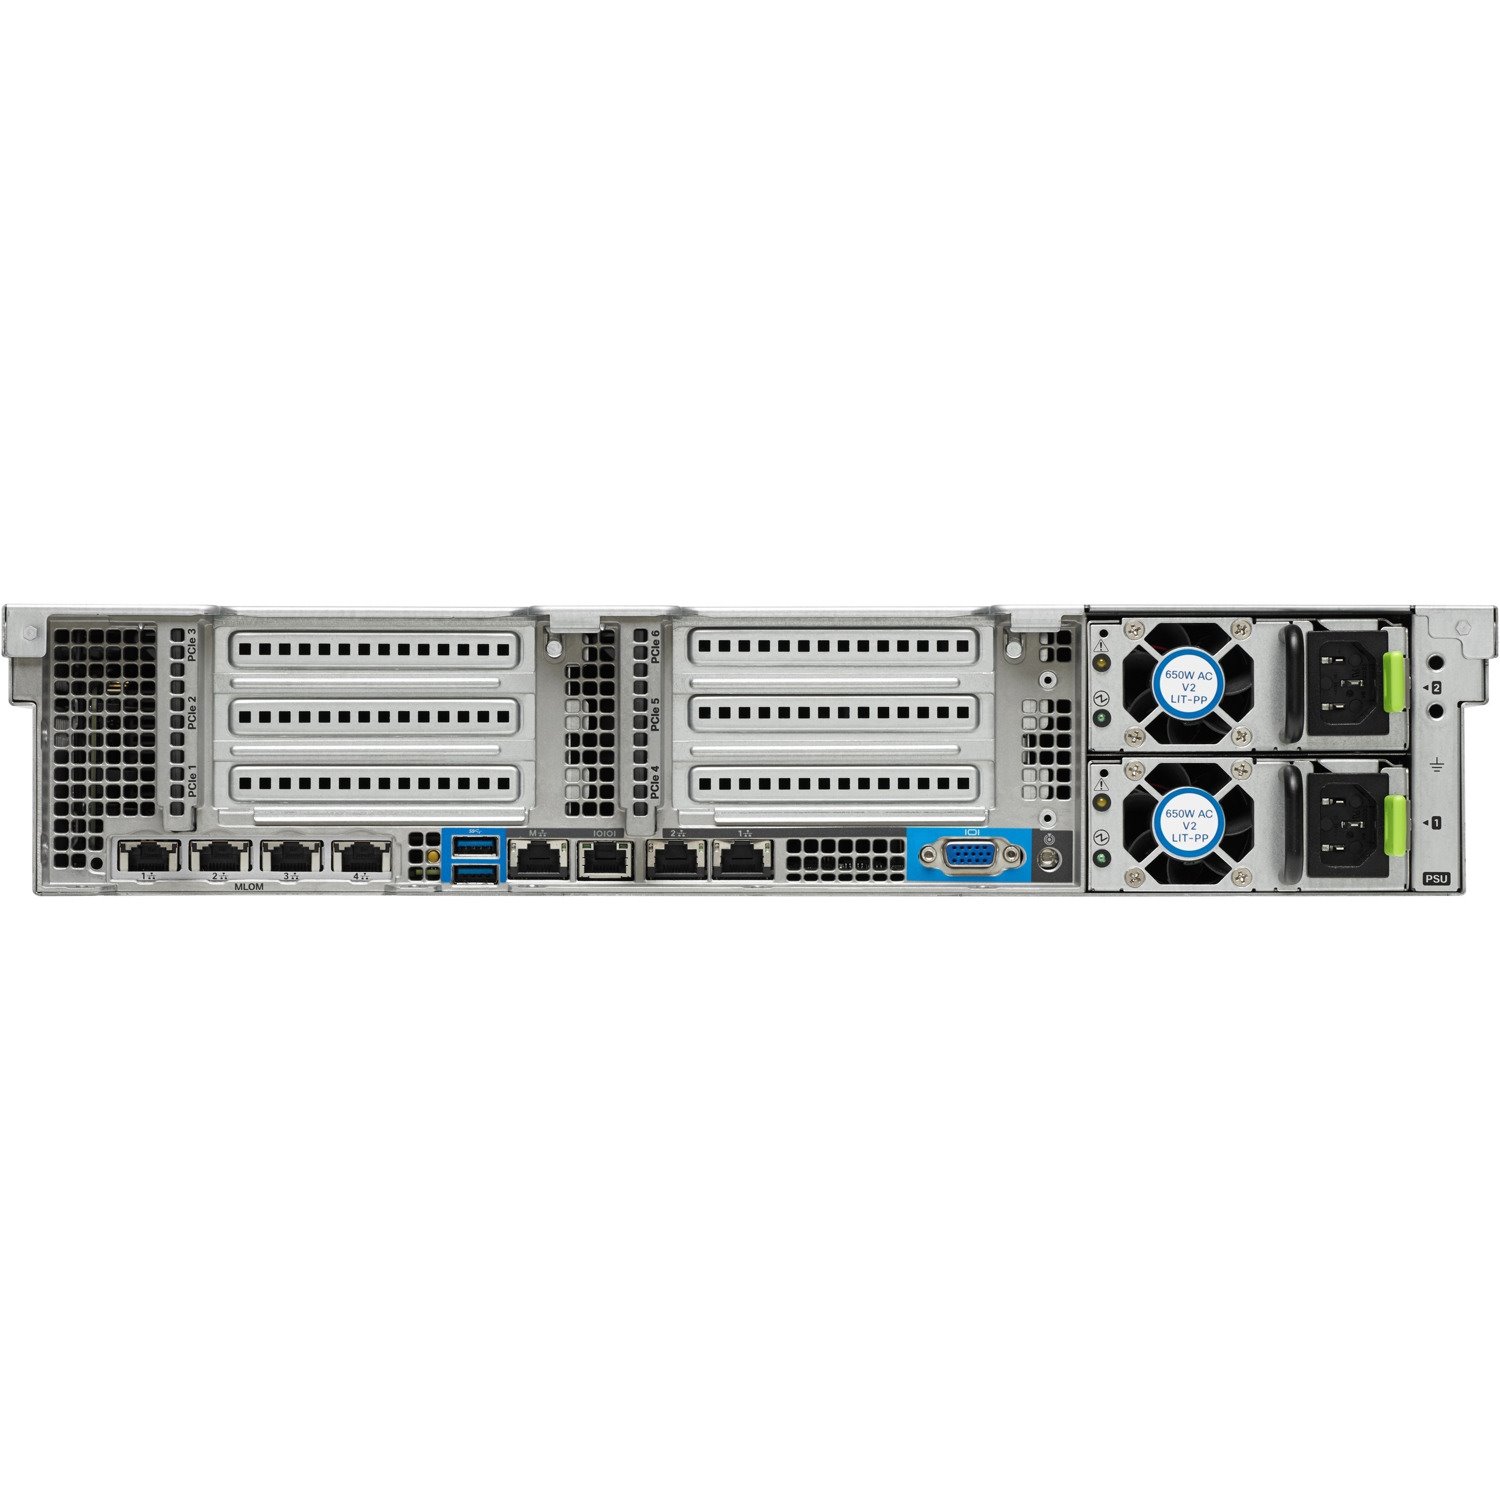 Cisco C240 M4 2U Rack Server - Intel Xeon E5-2650 v4 2.20 GHz - 256 GB RAM - 12Gb/s SAS, Serial ATA Controller